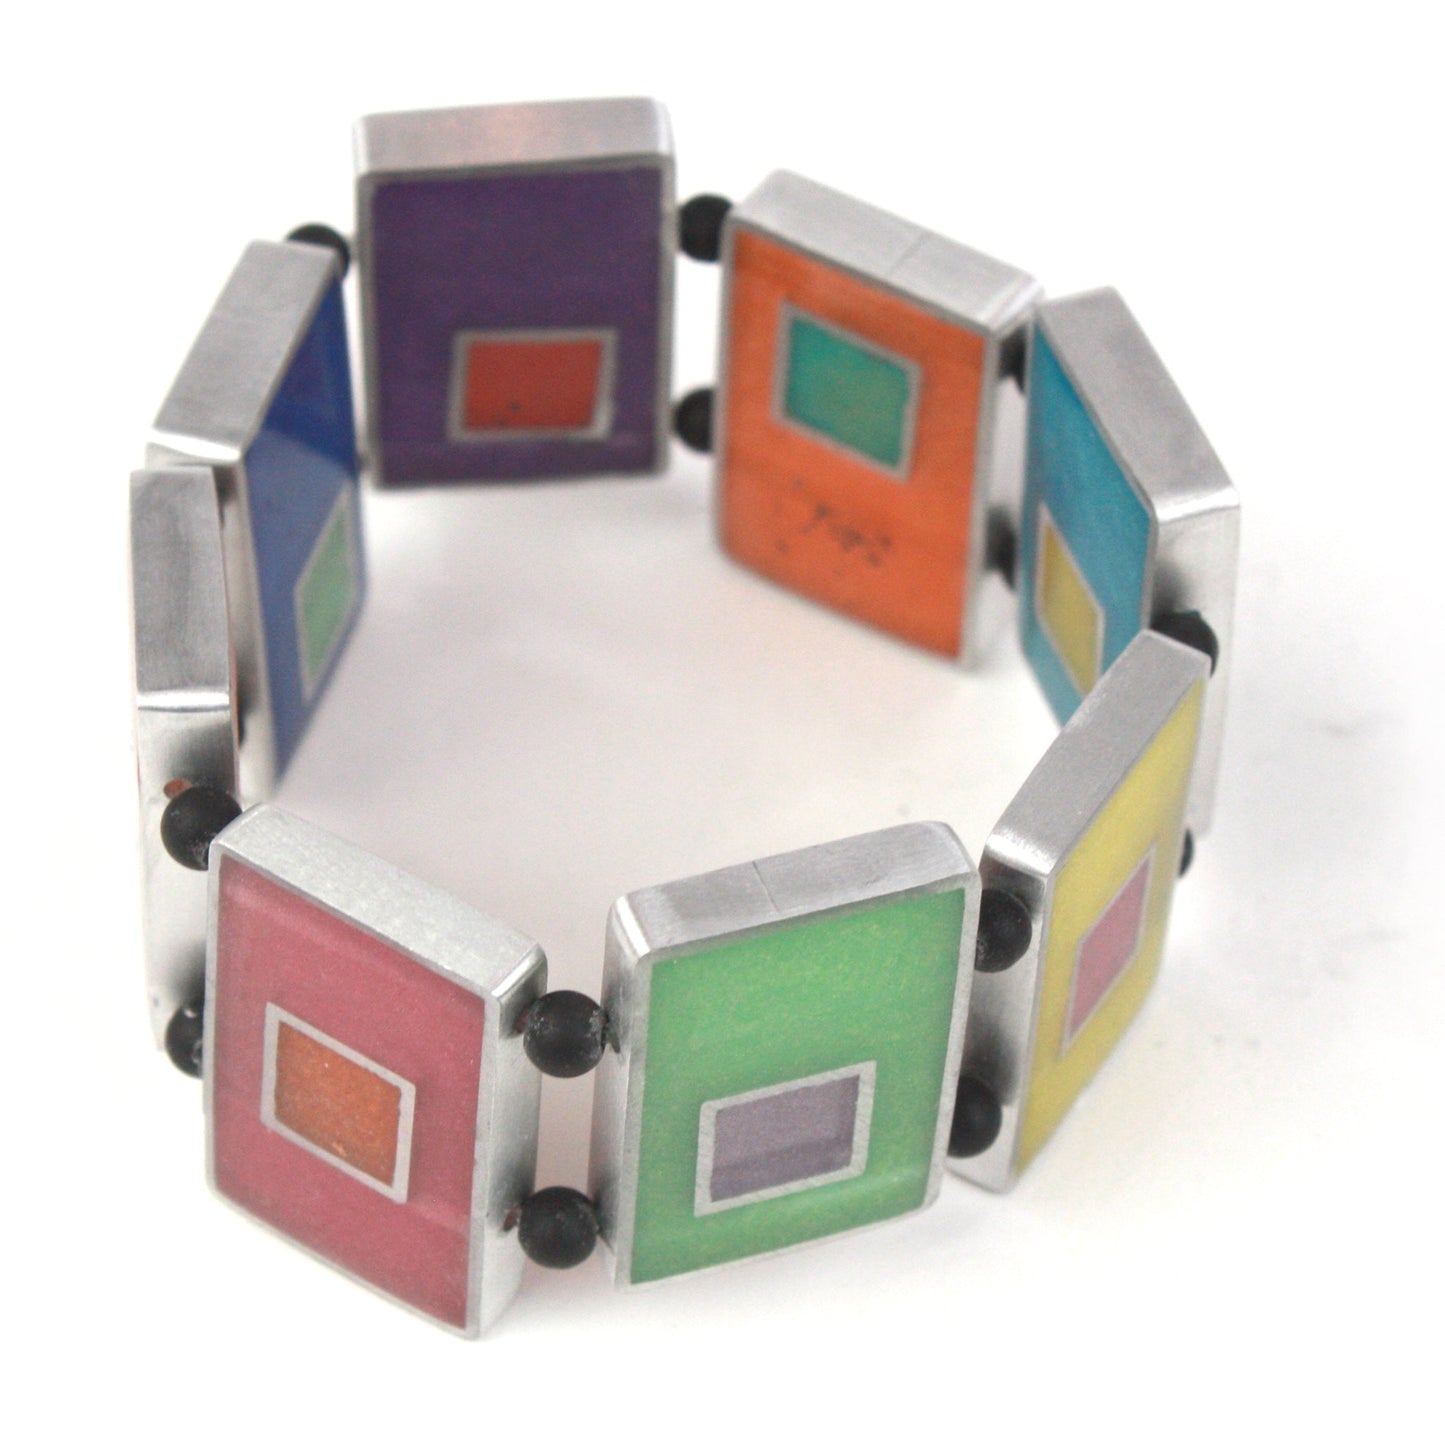 Resinique rectangle bracelet - Multi colored -wholesale